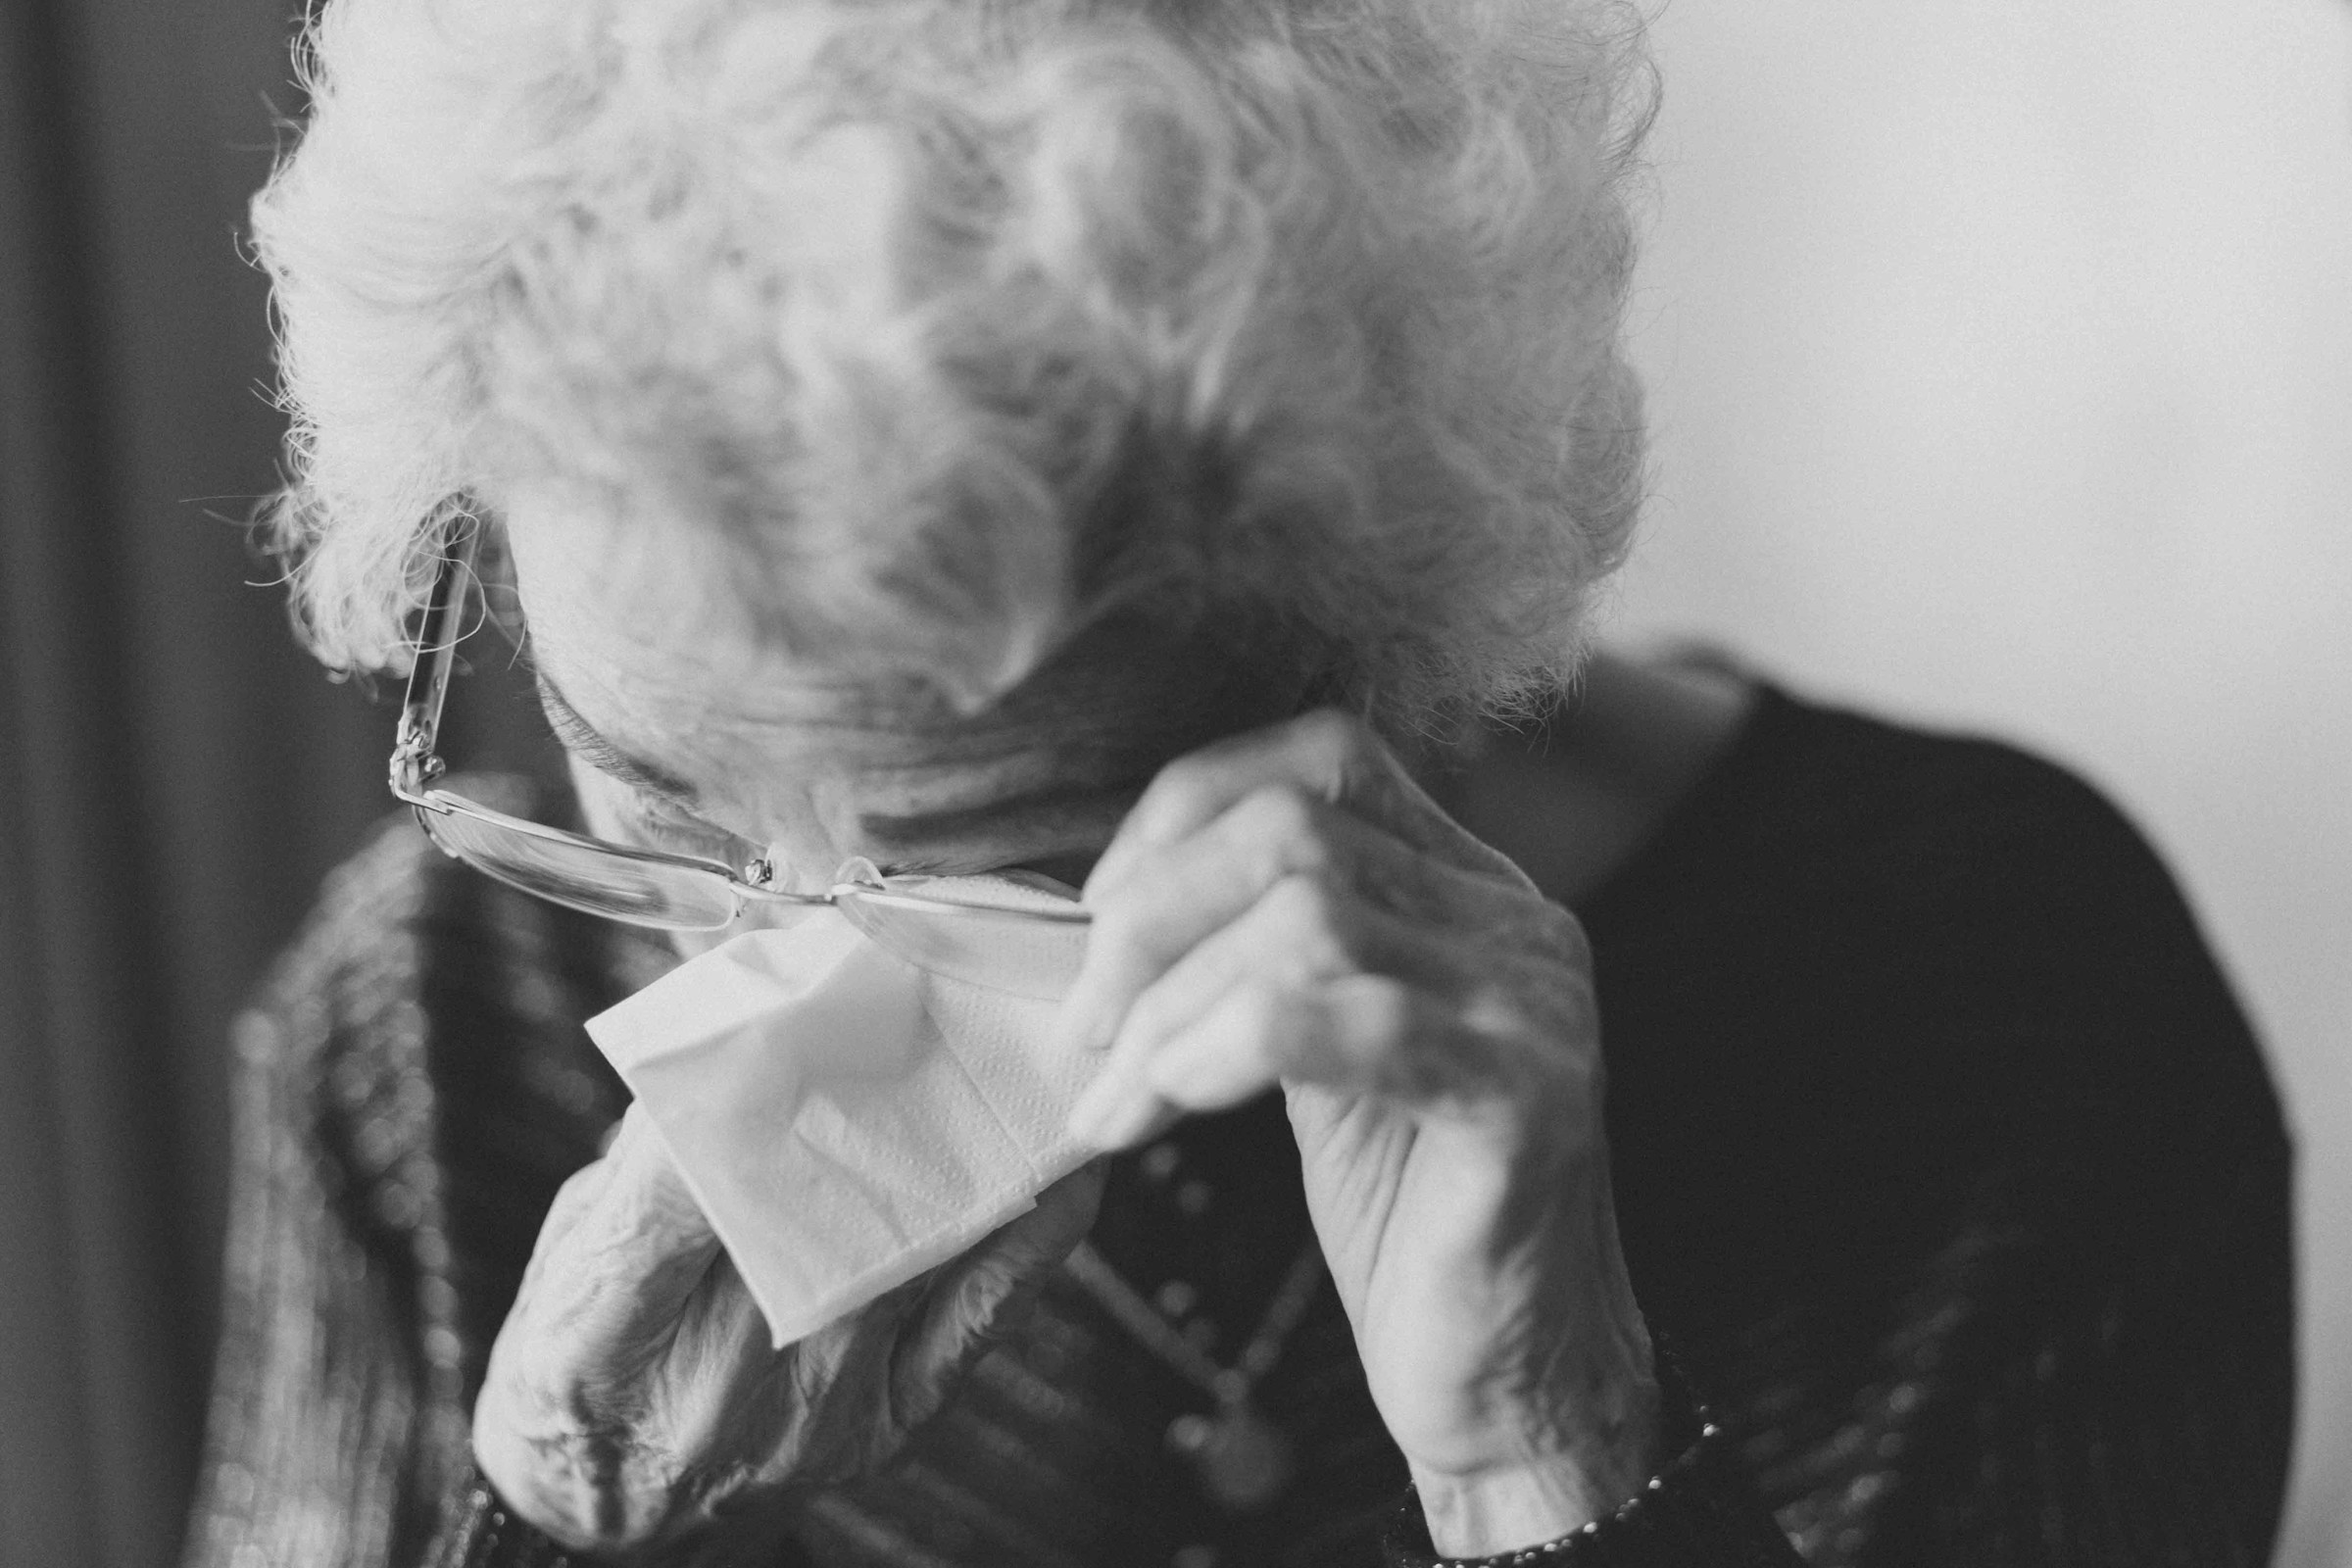 An elderly woman wiping her tears | Source: Unsplash